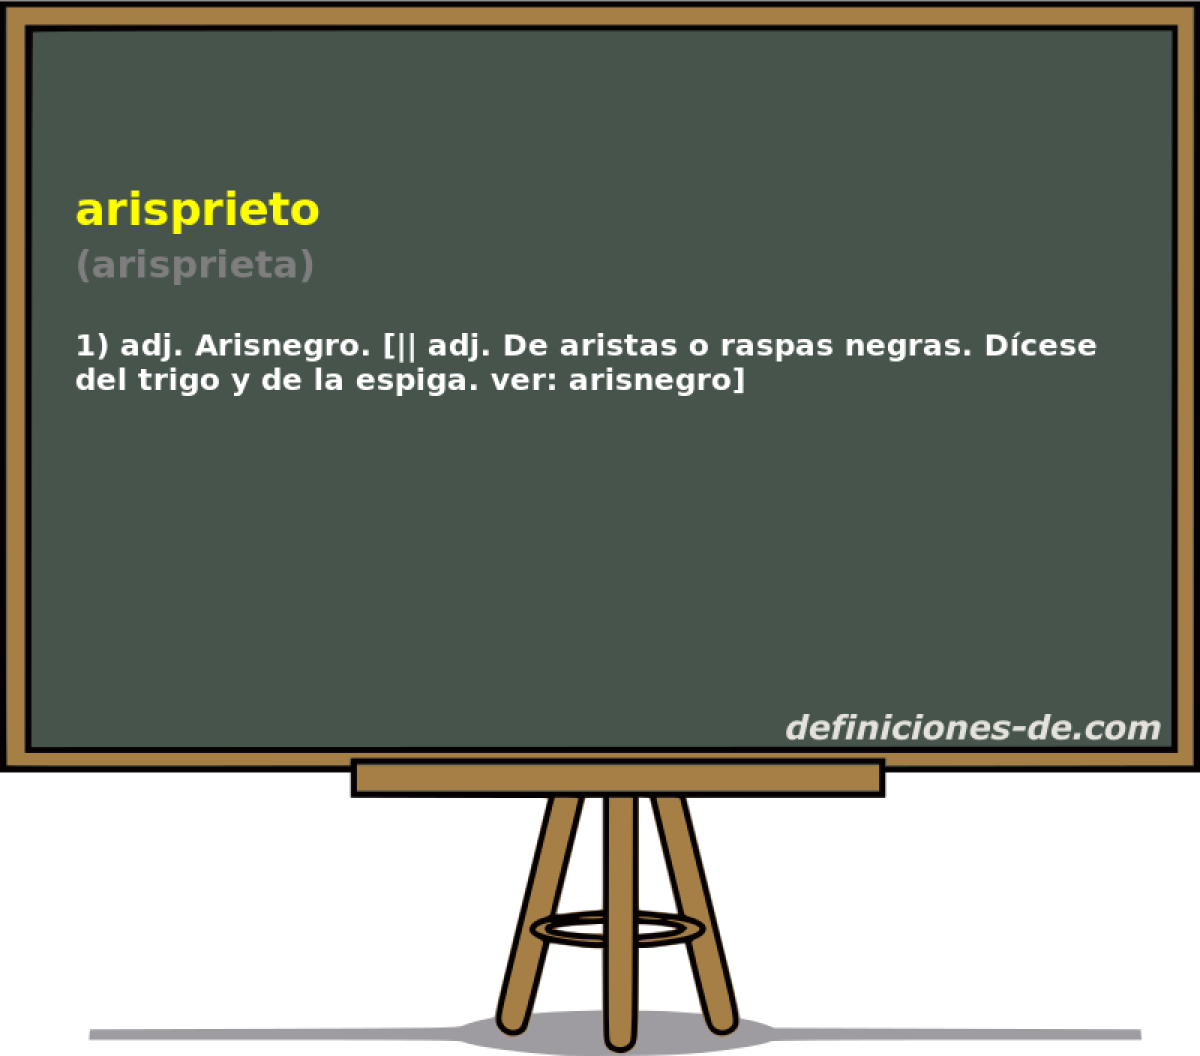 arisprieto (arisprieta)